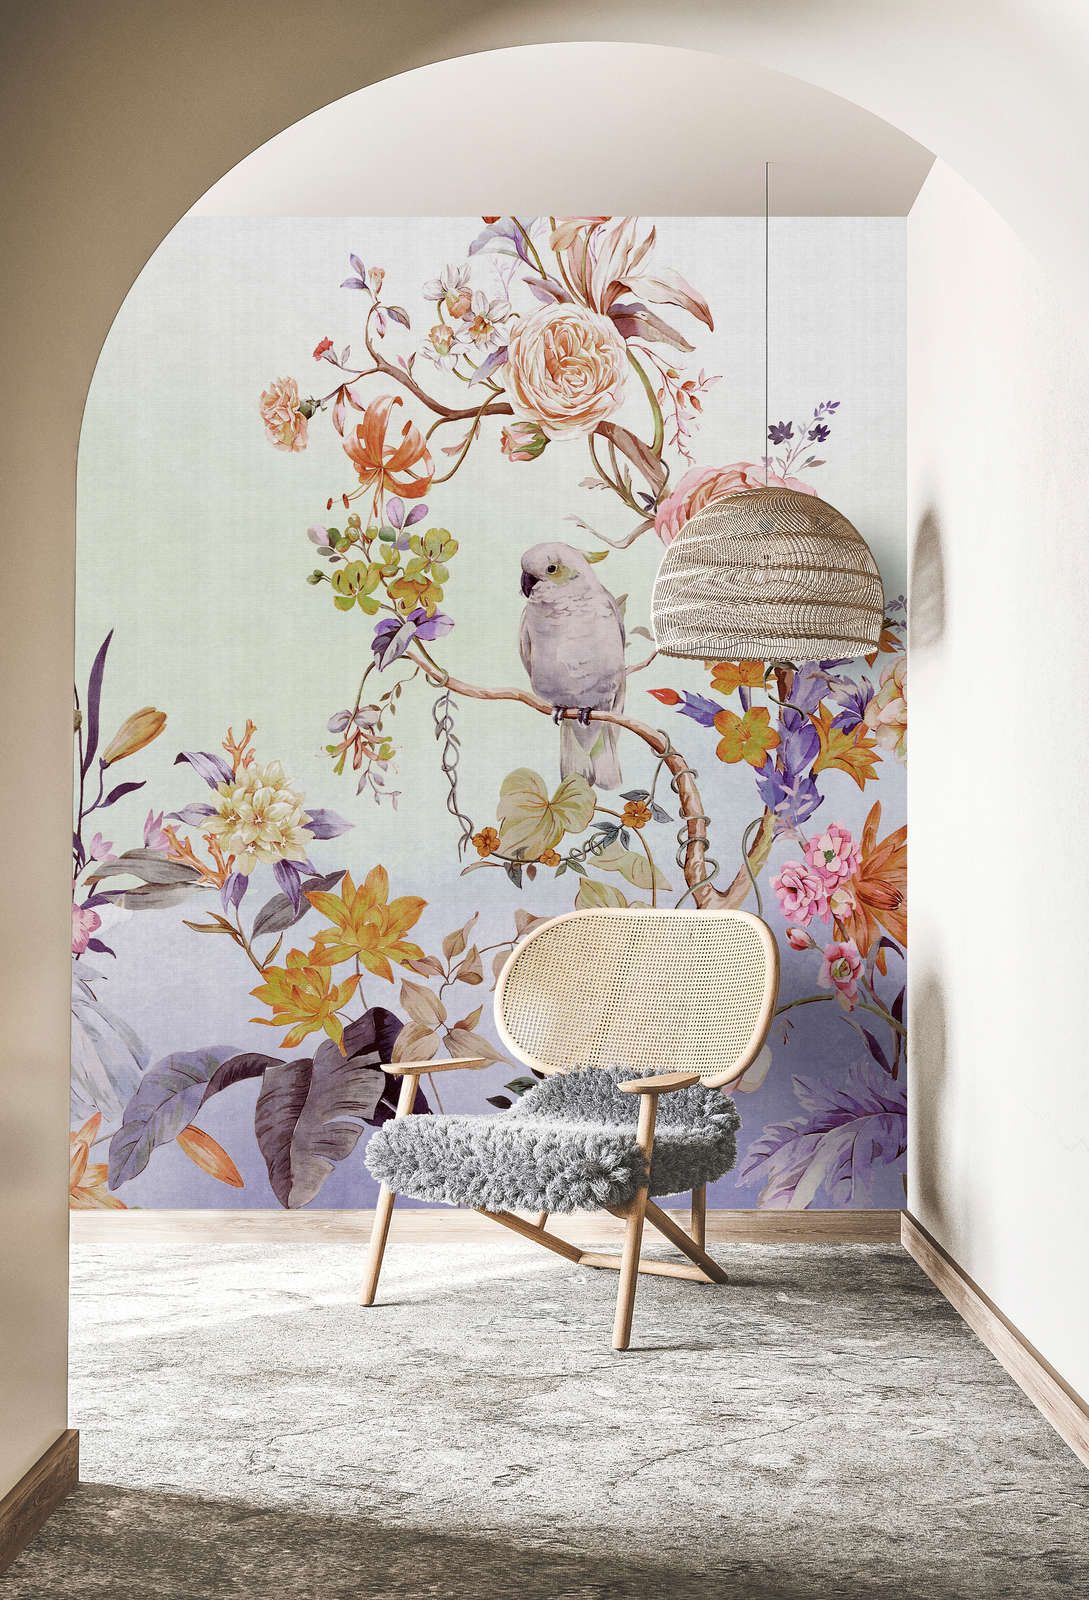             Fotomural »paradise« - Pájaro y flores con degradado de colores y estructura de lino en el fondo - Coloreado | Material sin tejer mate, liso
        